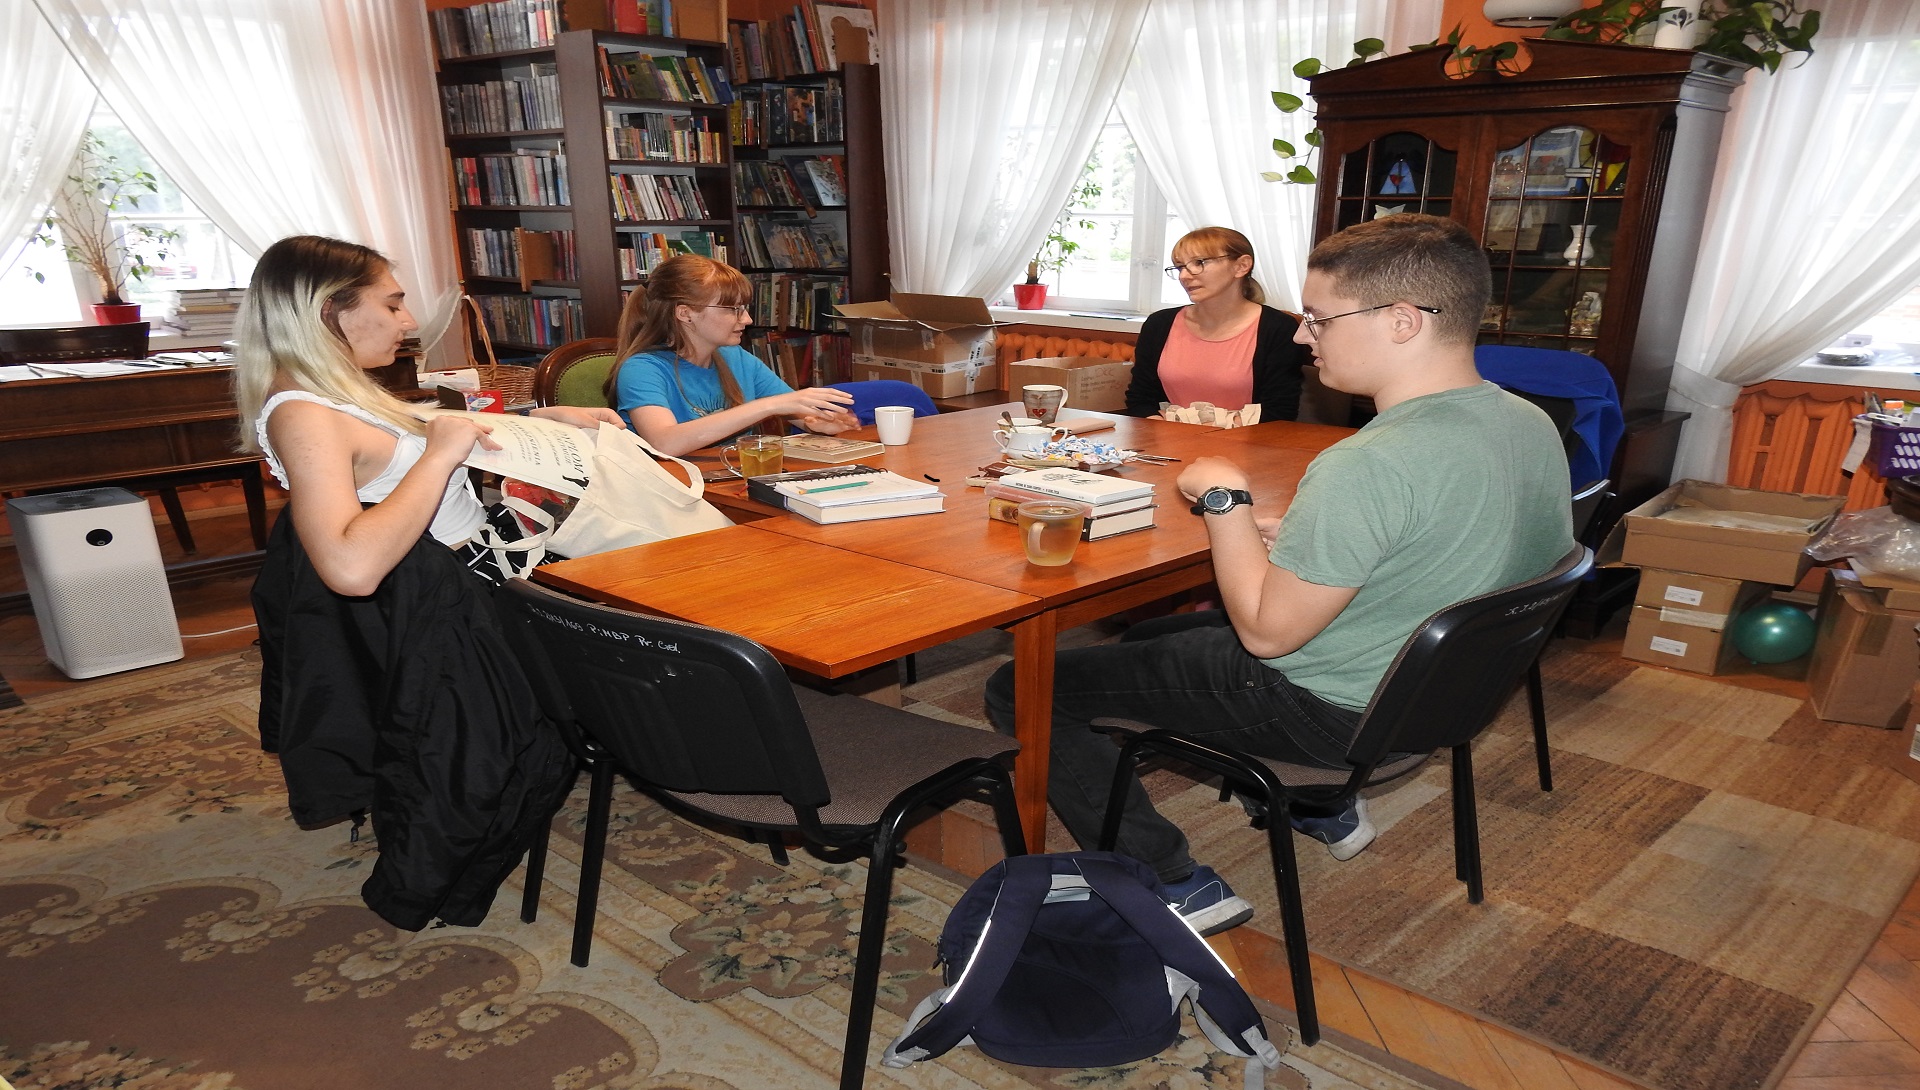 Cztery osoby siedzą przy stole wewnątrz pomieszczenia. Za nimi regały z książkami.